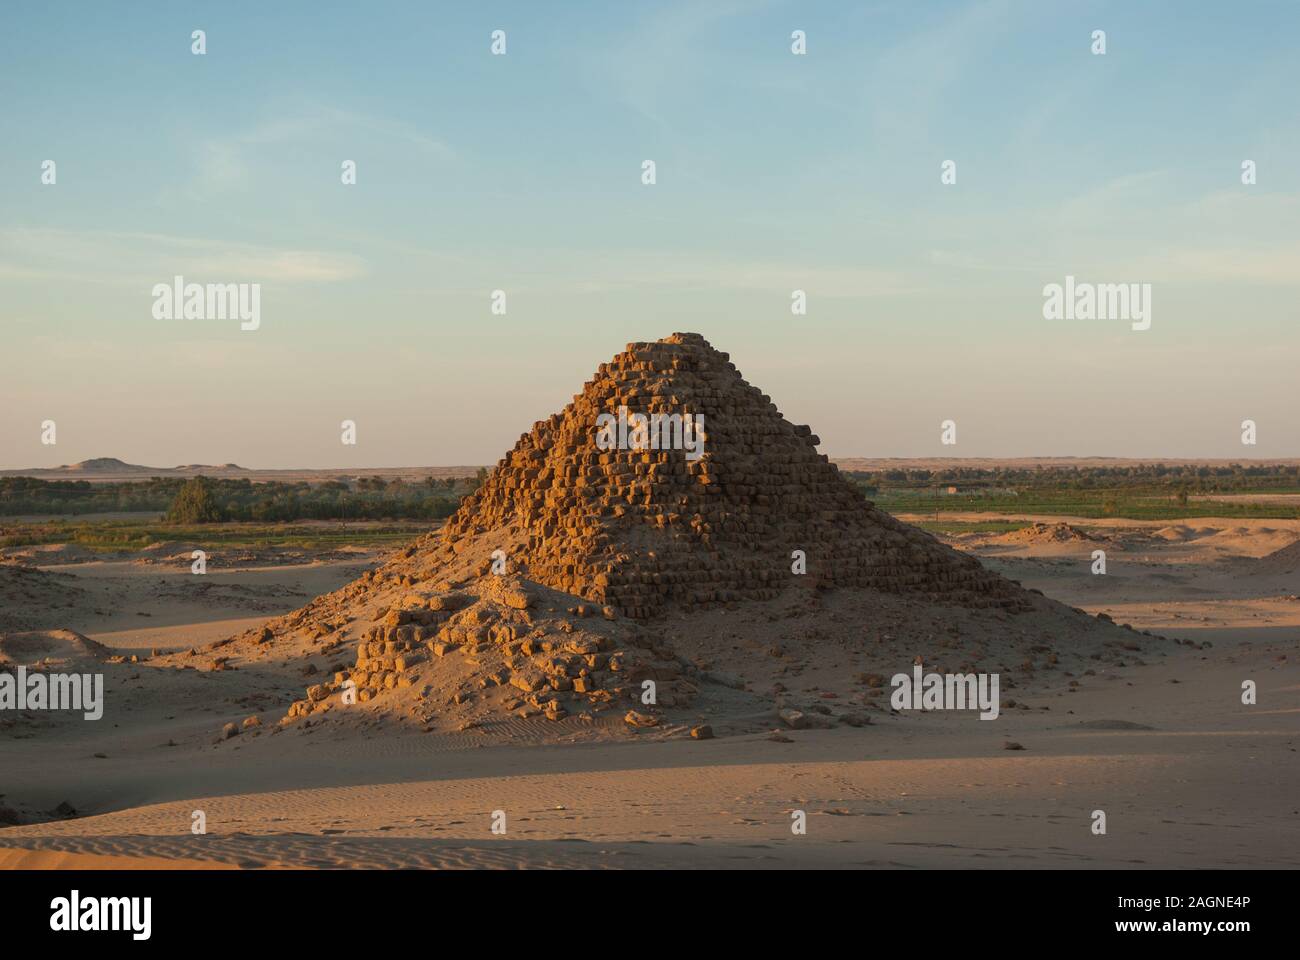 Pyramides, Necropoiis Royal, Nuri près de Karima, le nord du Soudan Banque D'Images